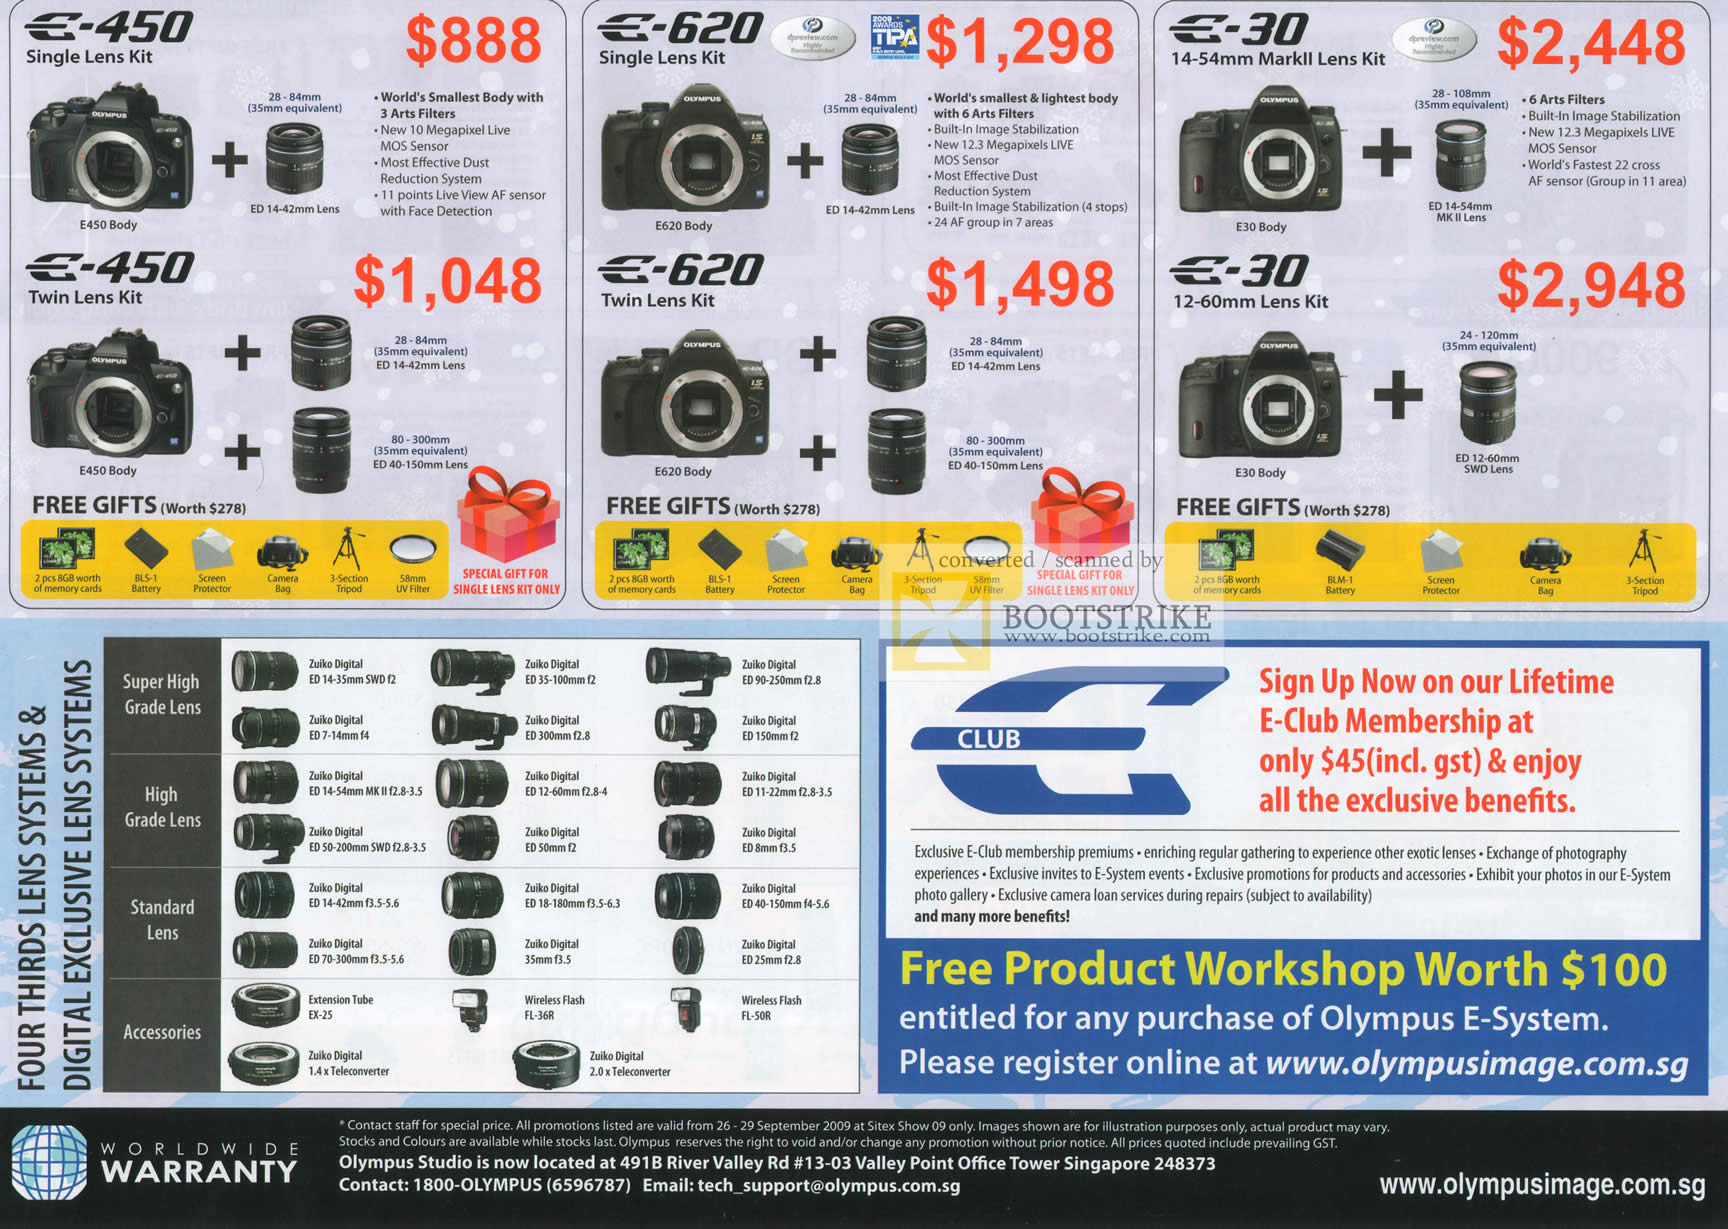 Sitex 2009 price list image brochure of Olympus Digital Cameras DSLR E 450 E 620 E 30 Lens